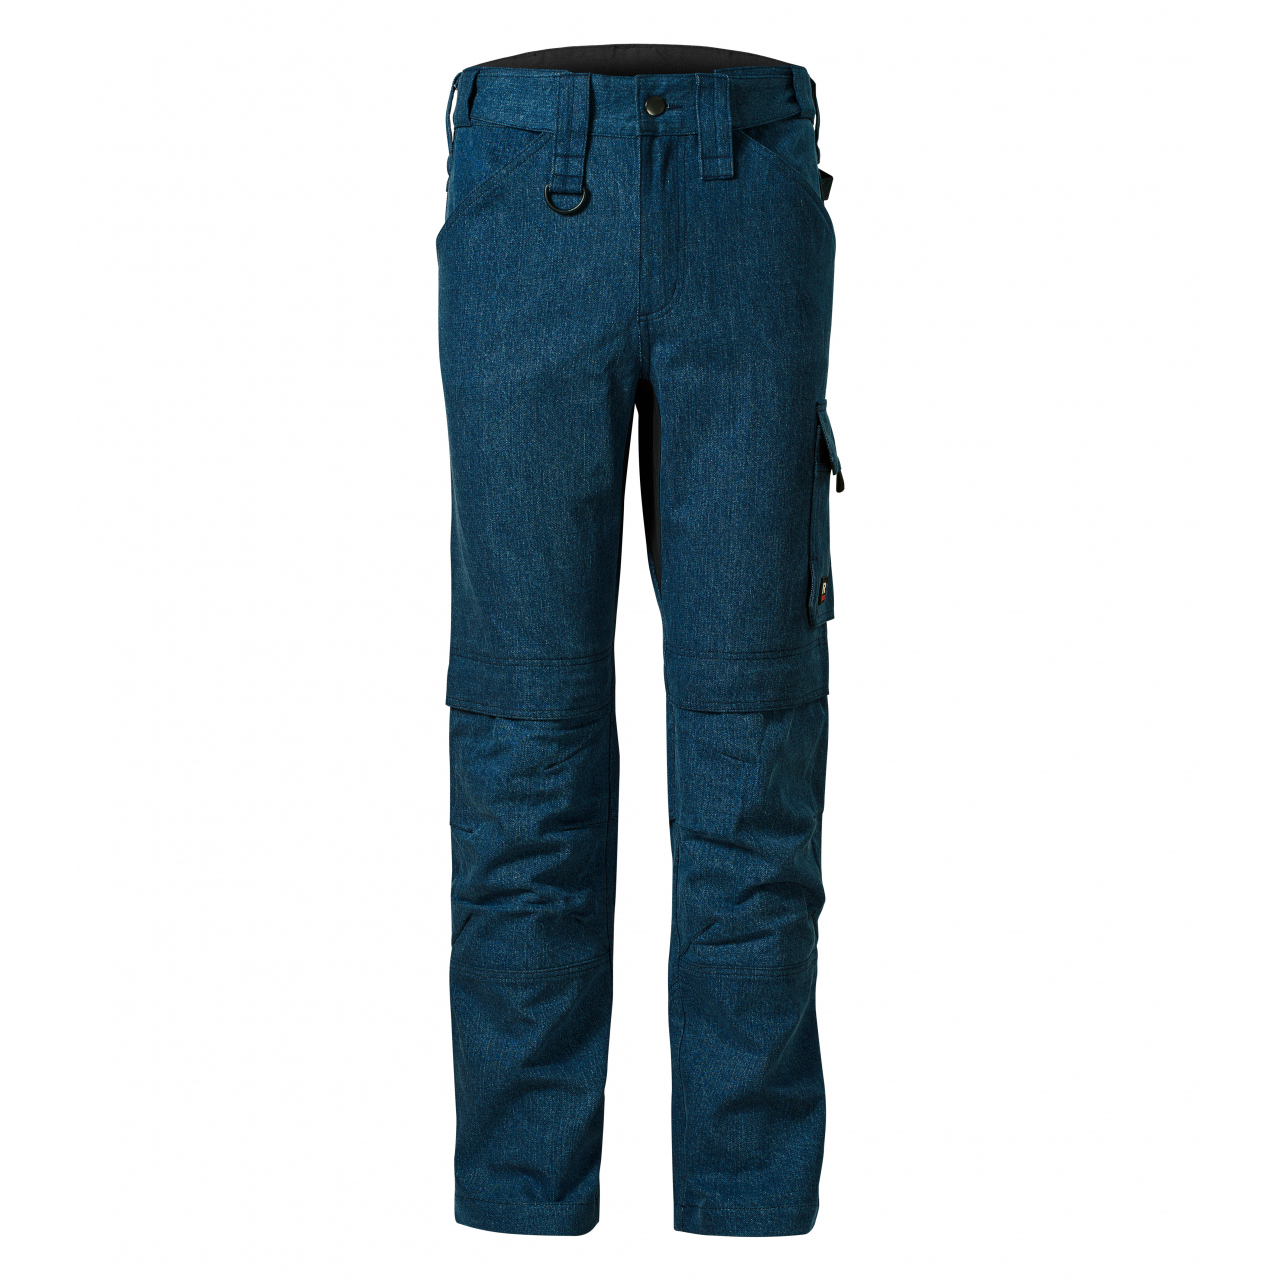 Pracovní džíny pánské Rimeck Vertex - tmavě modré, 46